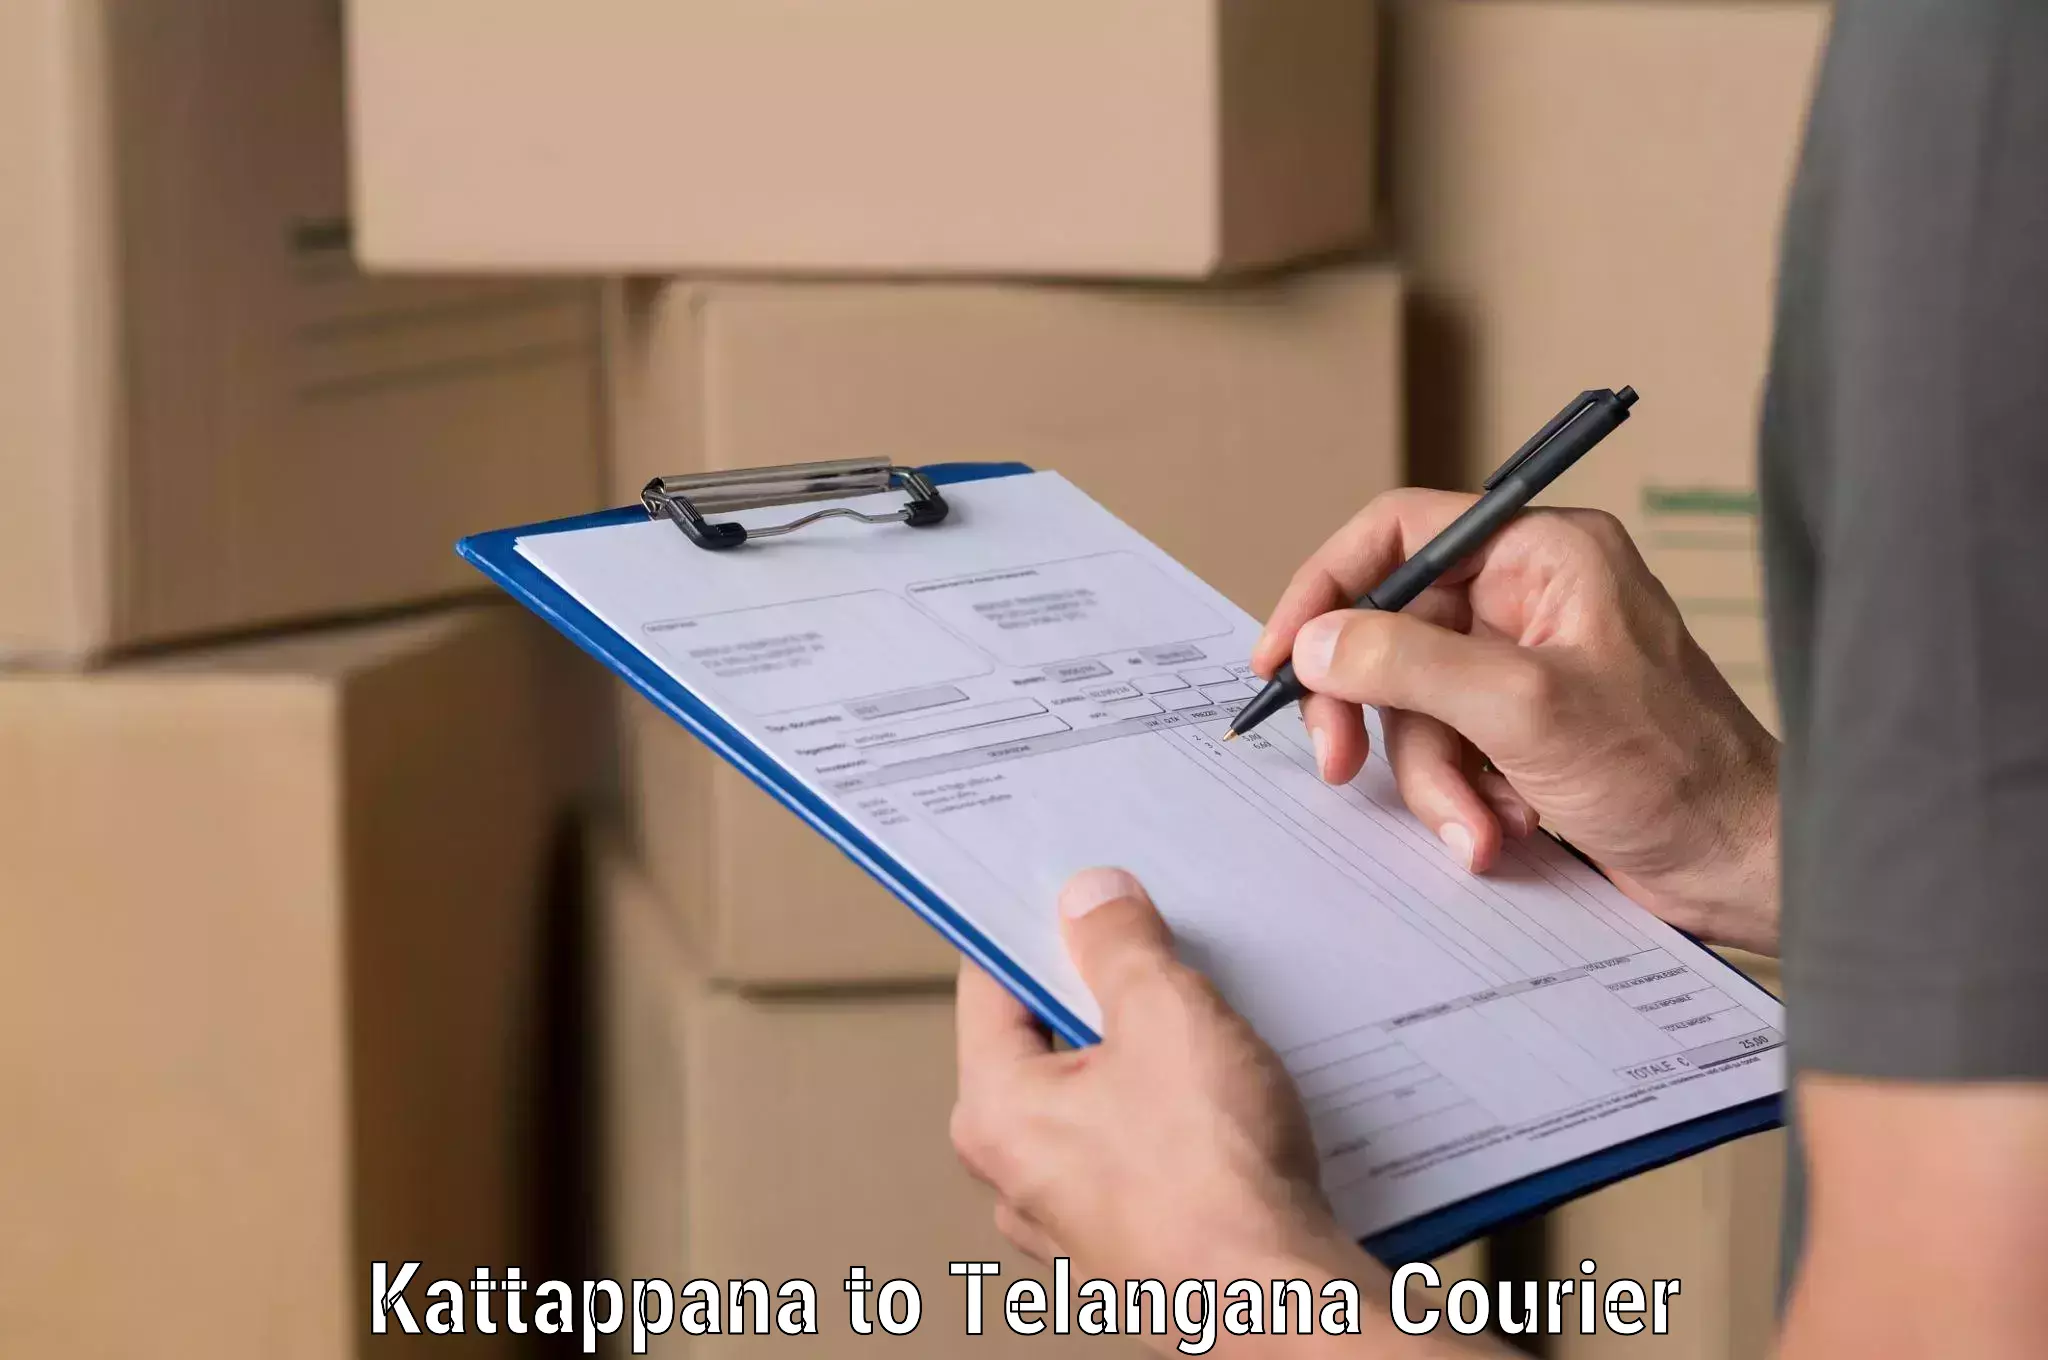 Advanced shipping network Kattappana to Mahabubabad